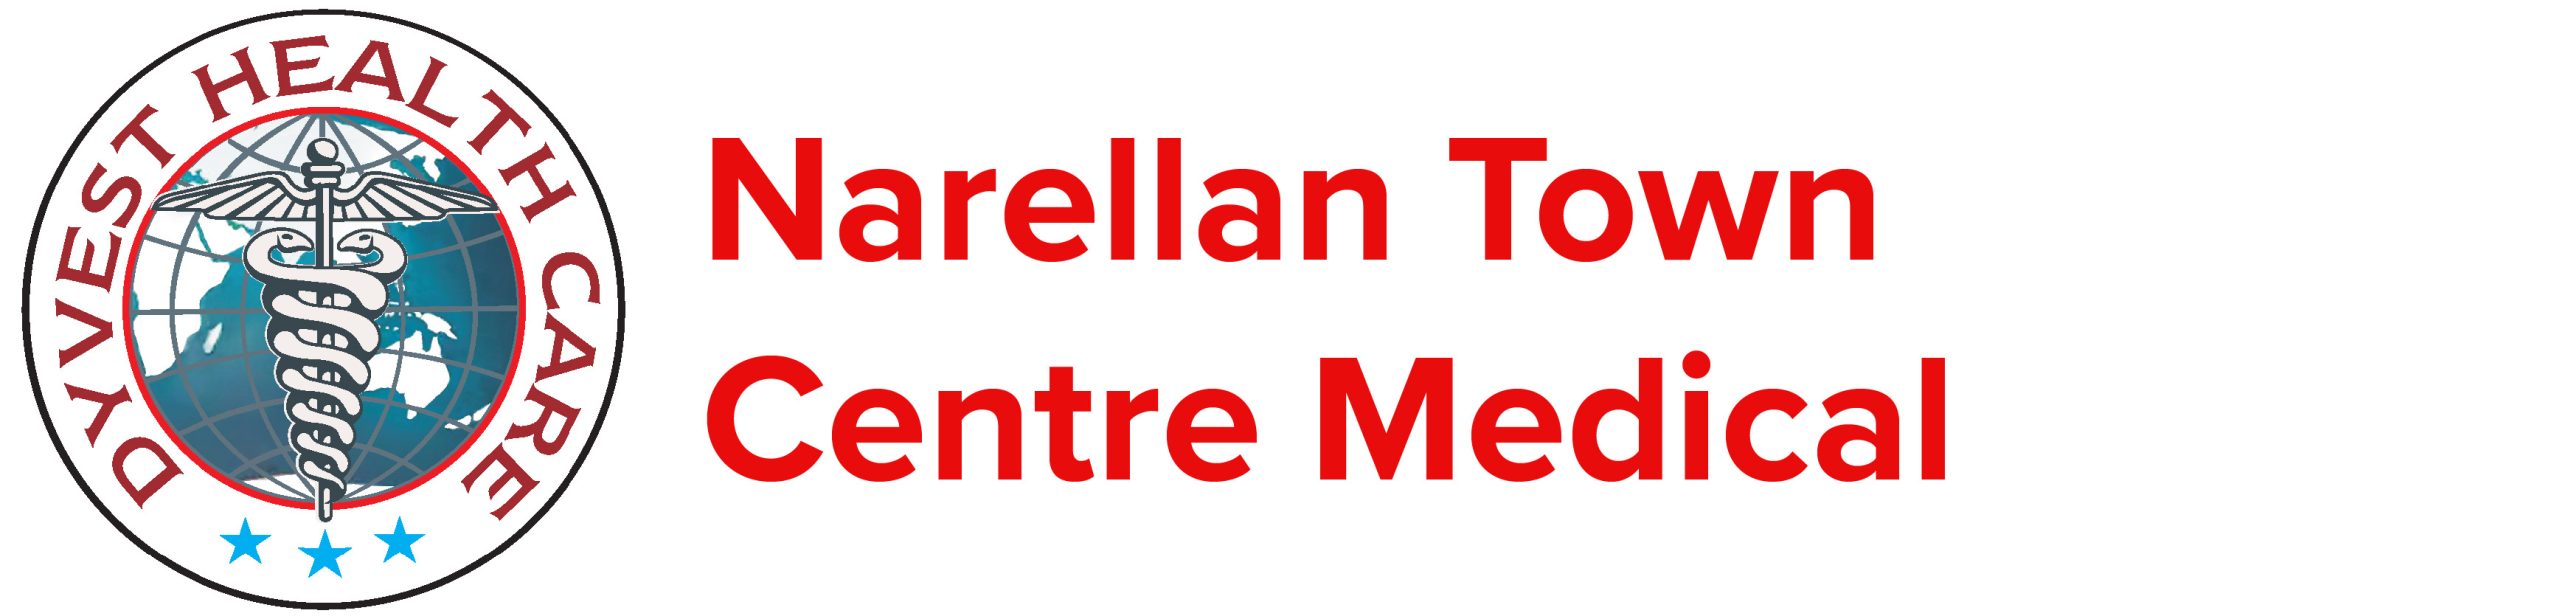 Narellan Town Centre Medical Logo